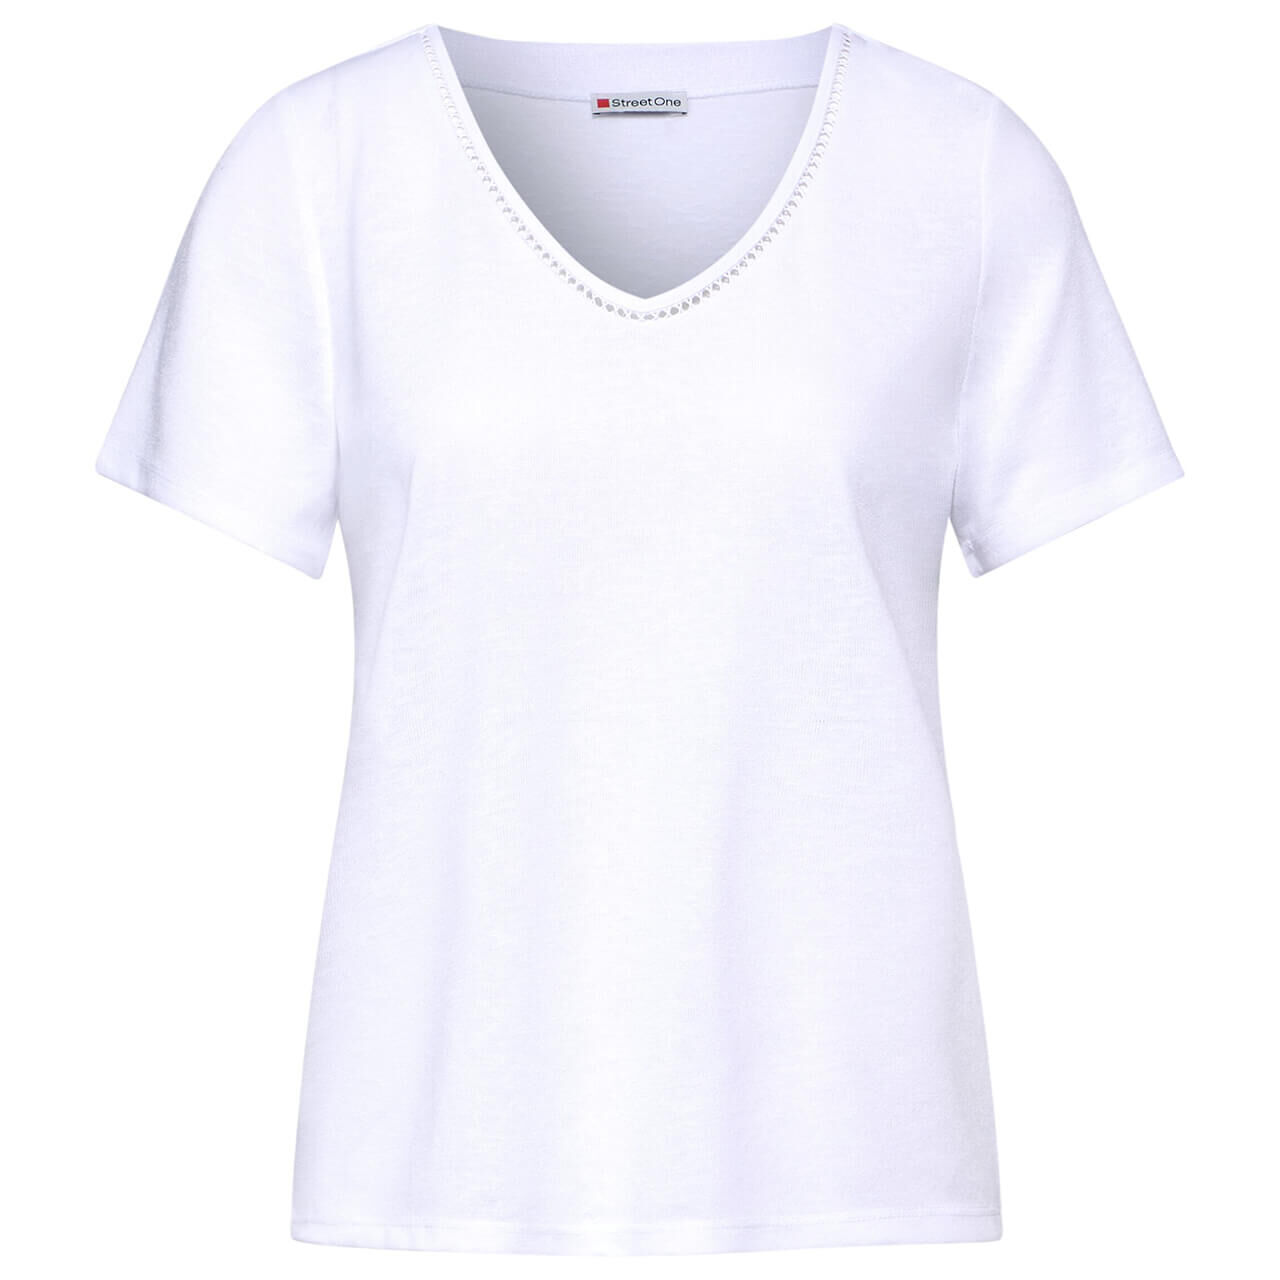 Street One Damen T-Shirt Linen Look white with crochet